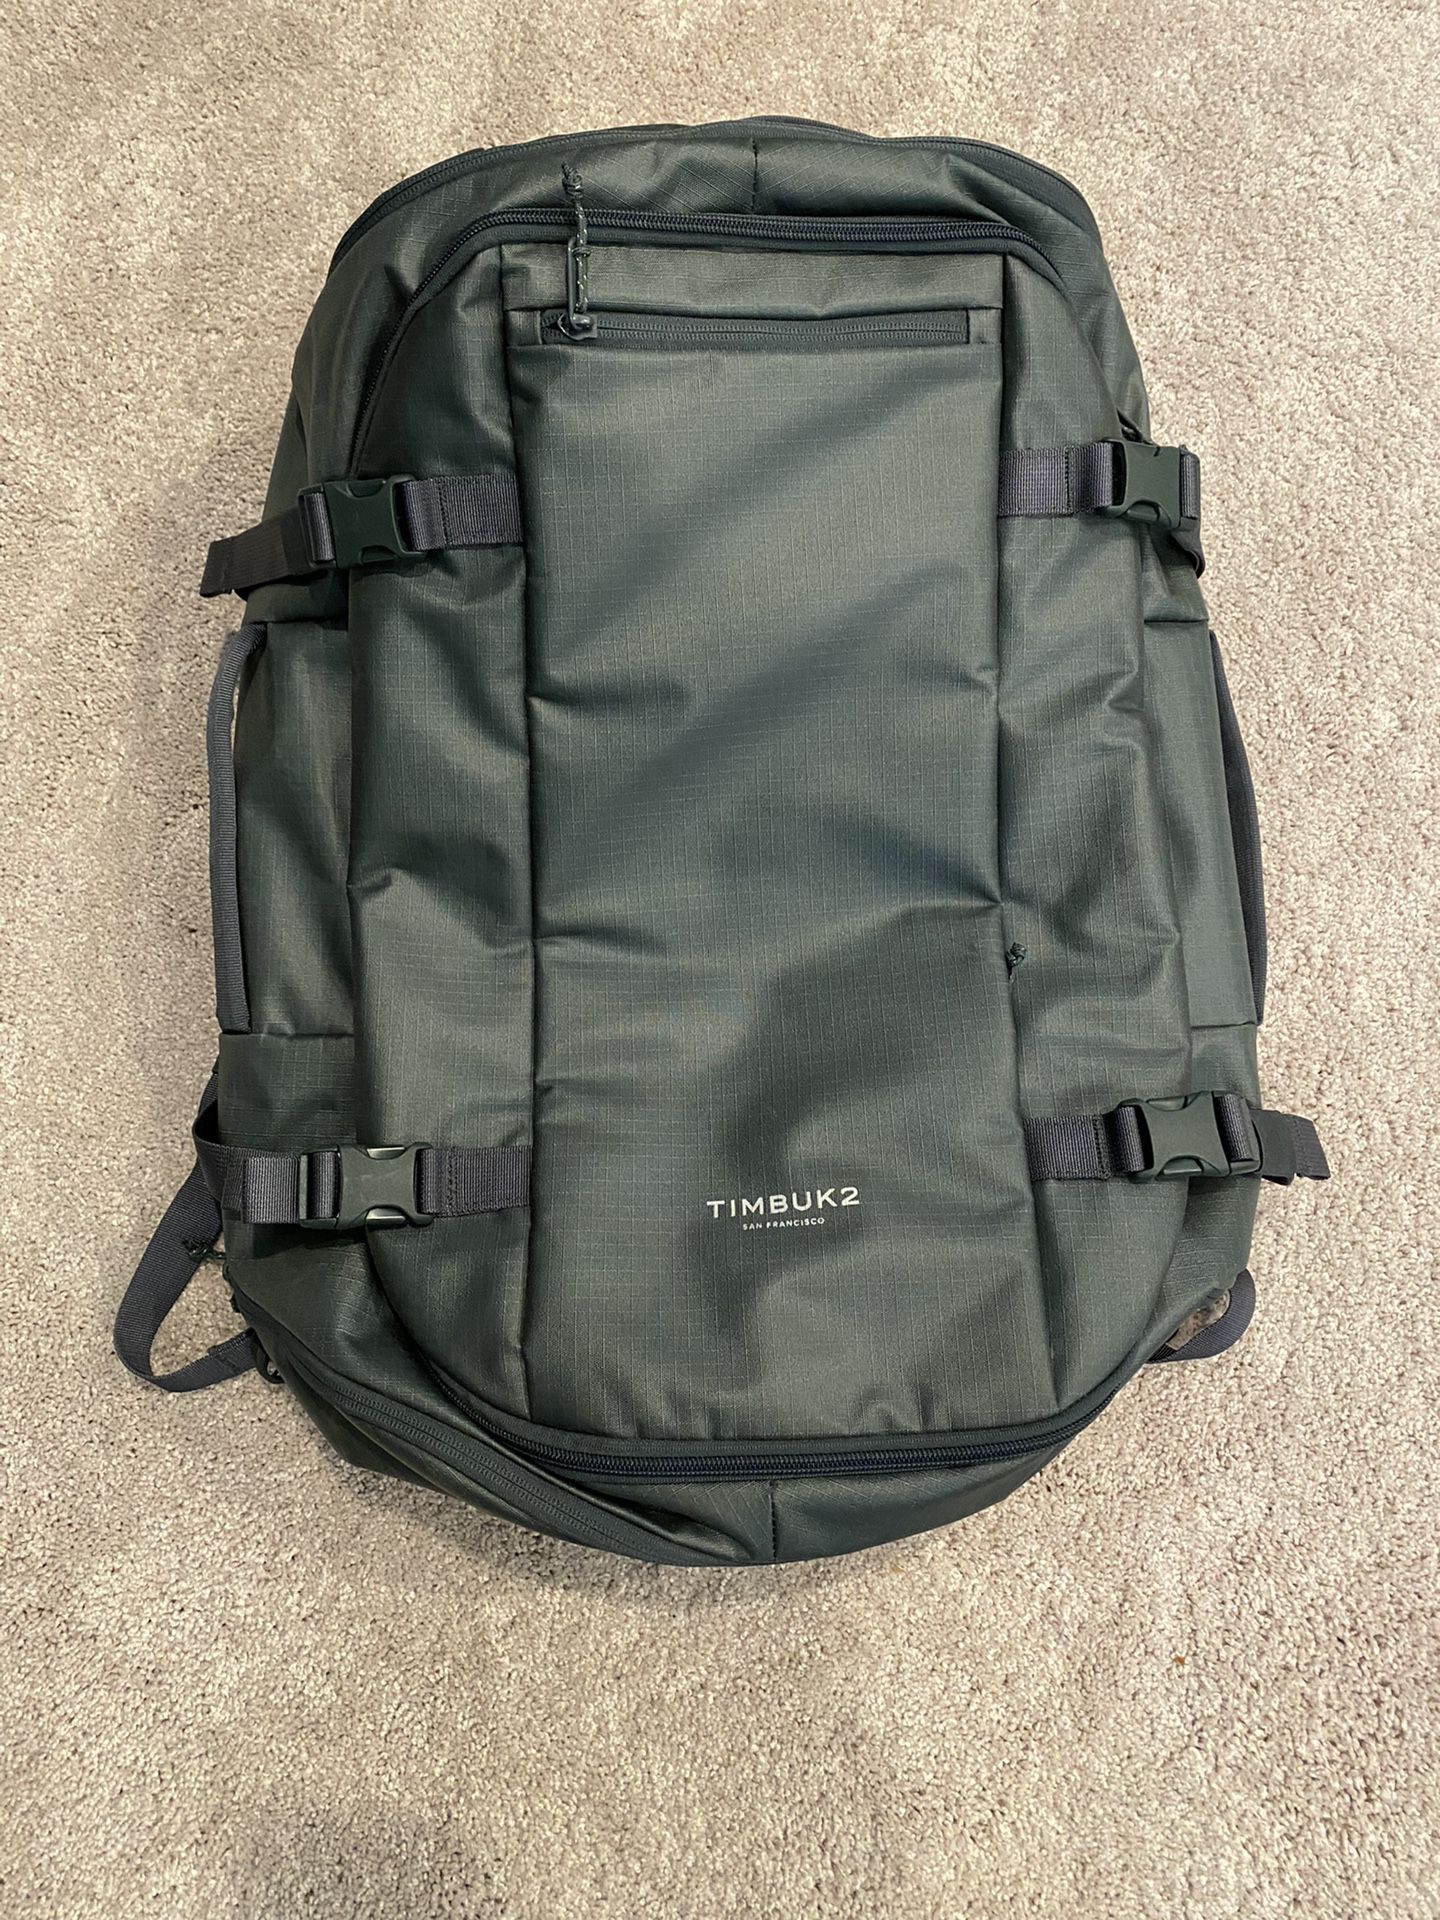 Timbuk2 Wander Travel backpack